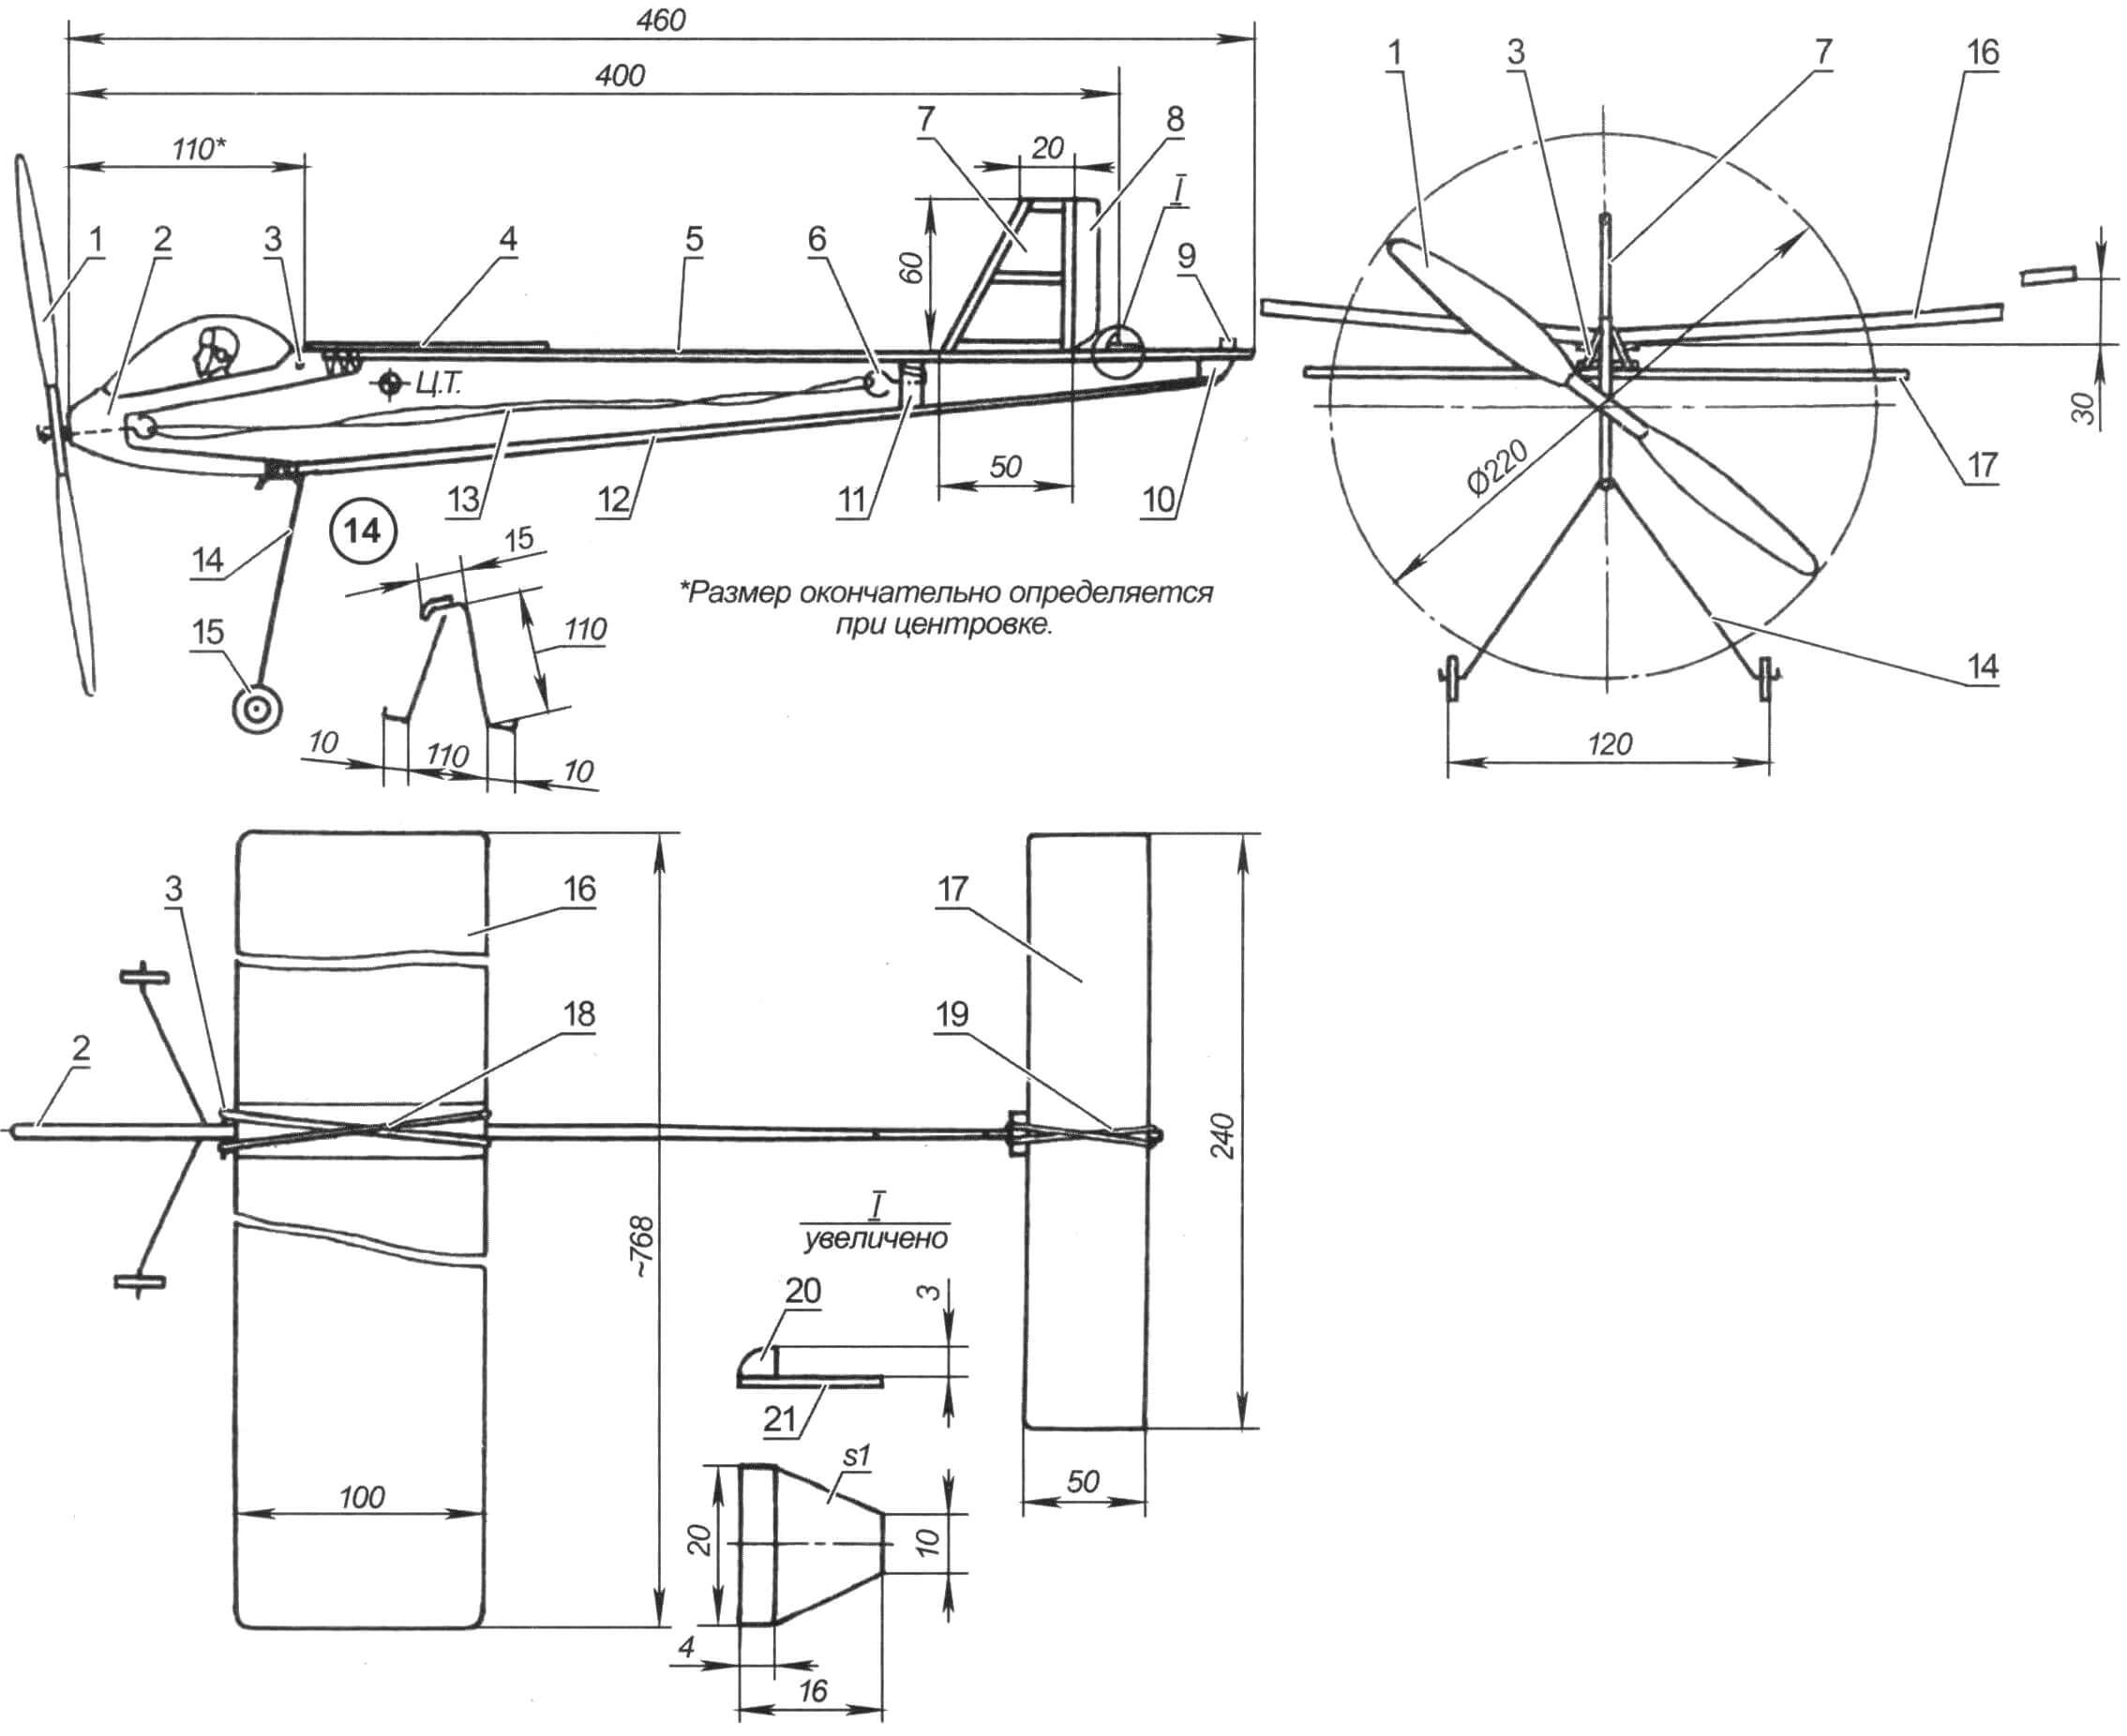 Резиномоторная модель самолета (крыло и стабилизатор на главном виде, винт, киль и руль на виде сверху условно не показаны)